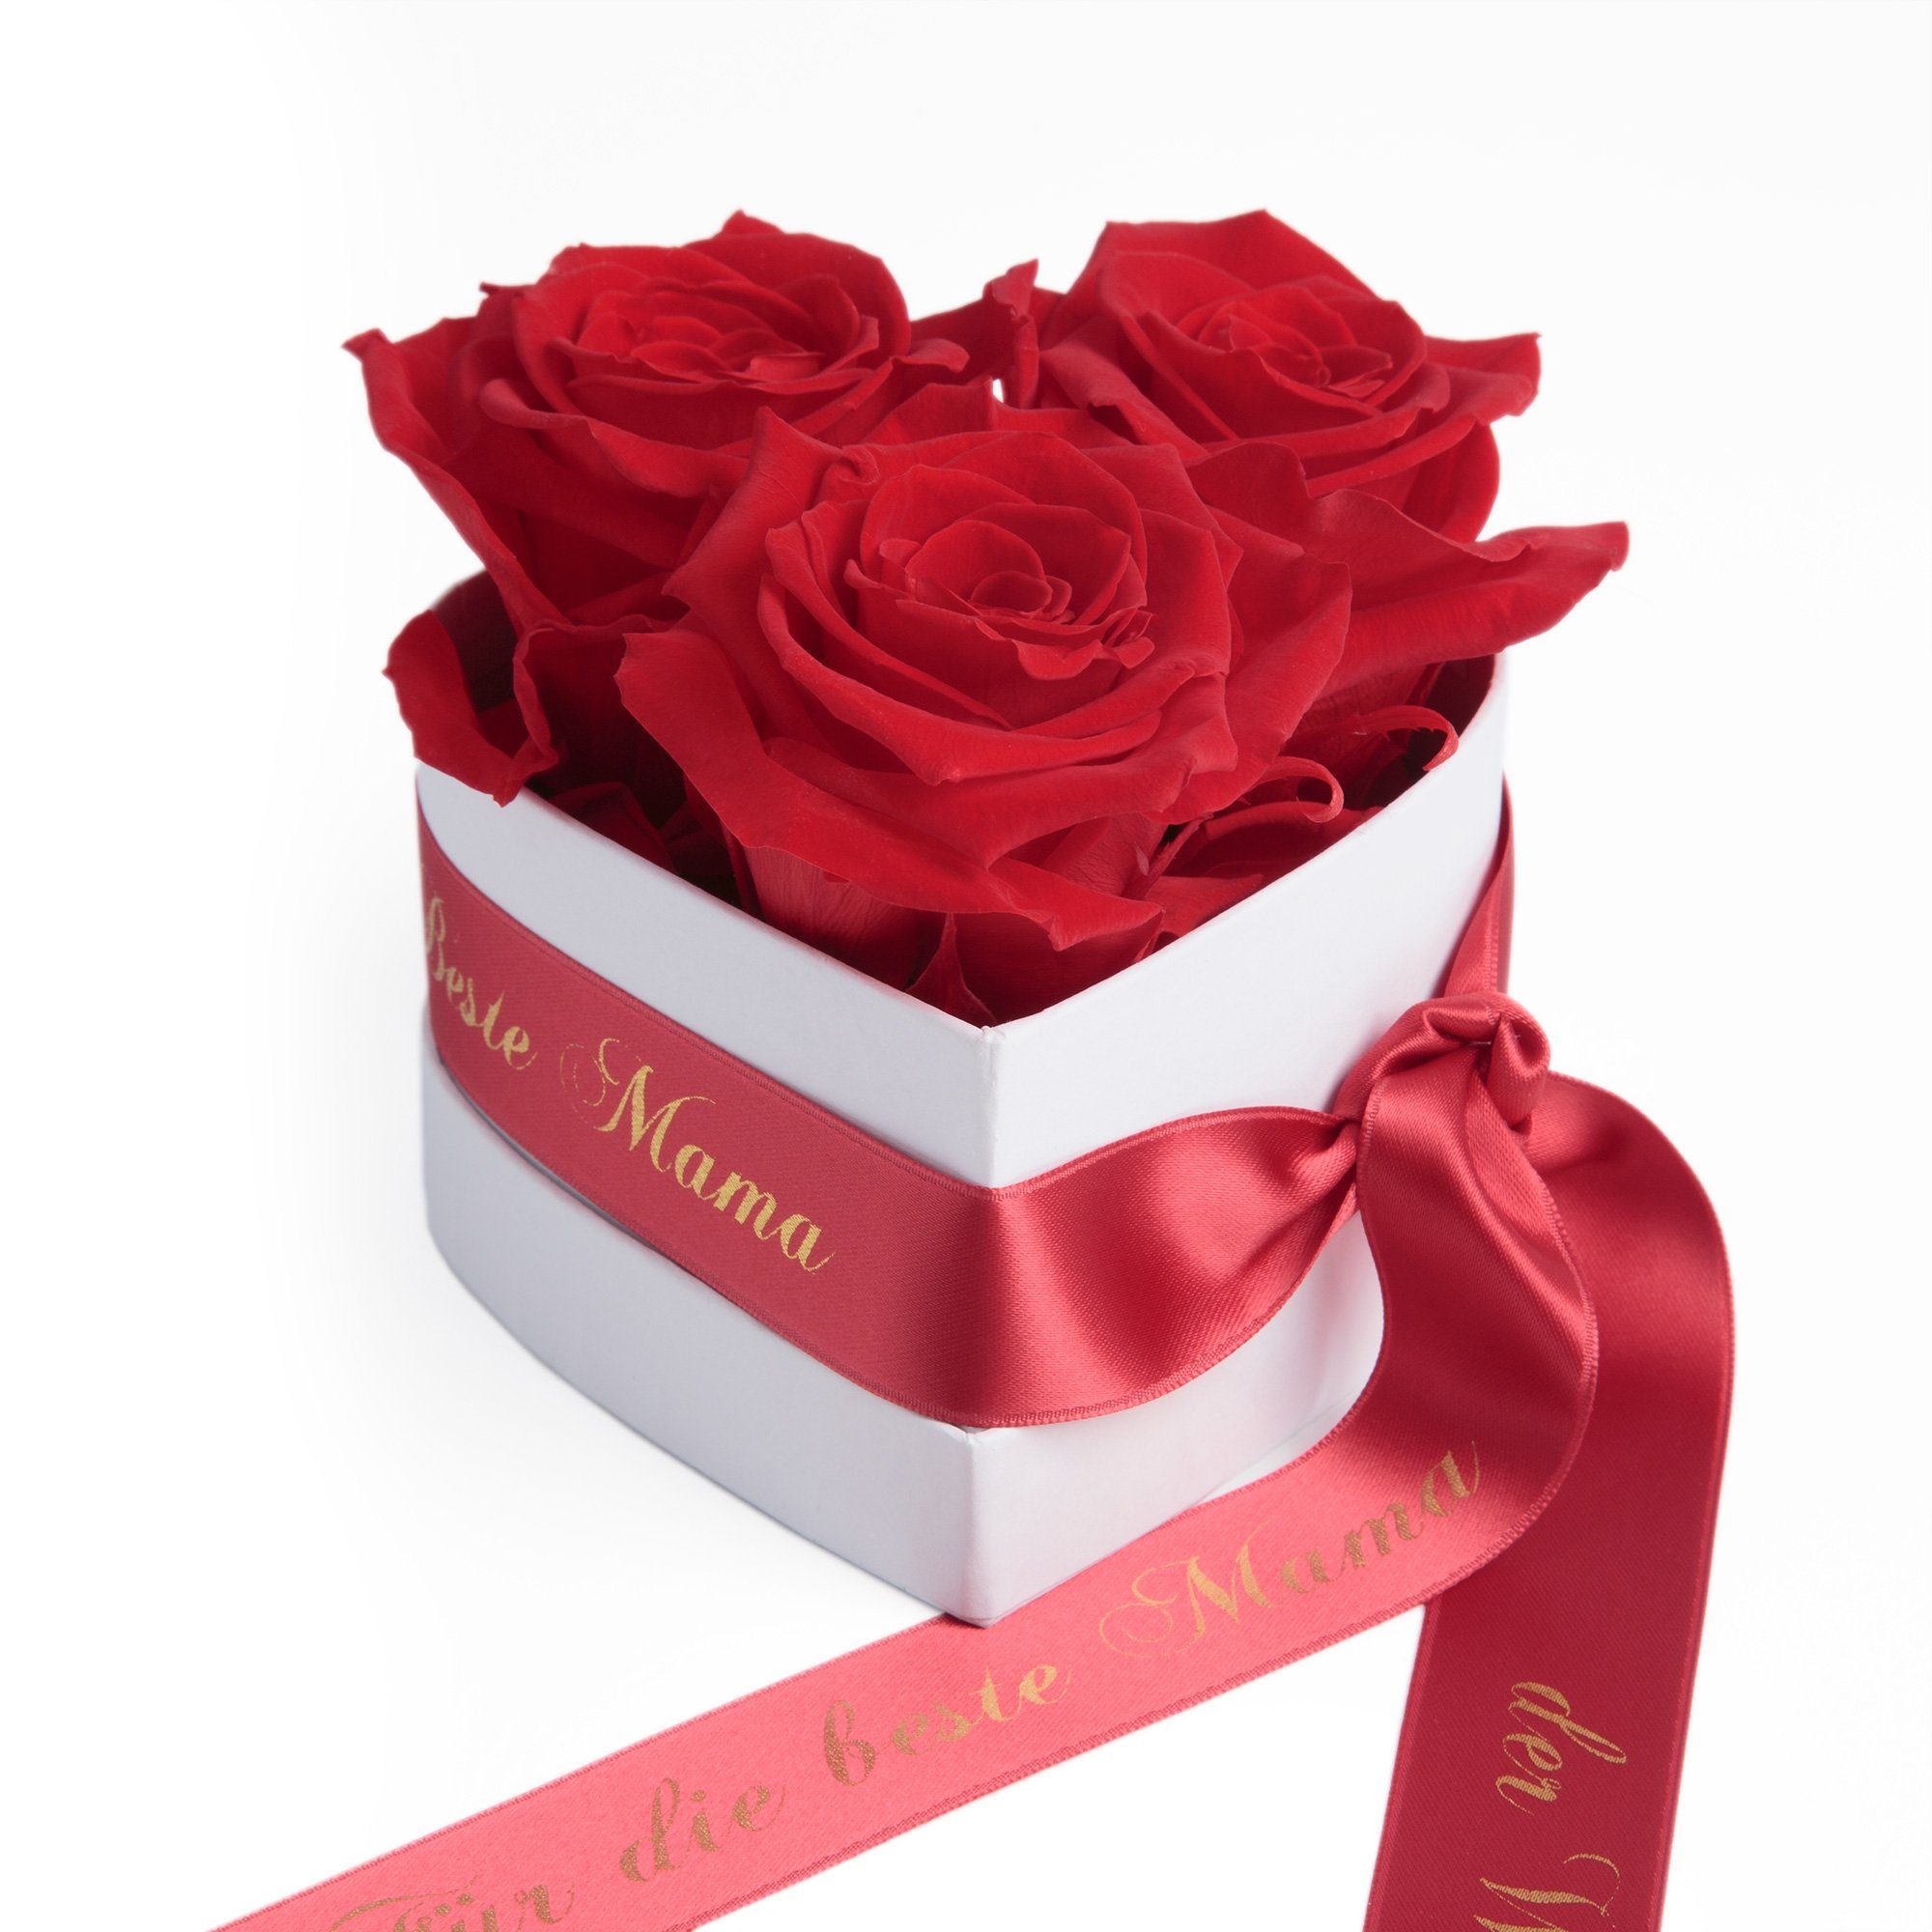 Rosen Rose, 3 Heidelberg, haltbar Beste 10 Welt SCHULZ für Herz die Mama Infinity der 3 Rot cm, ROSEMARIE Geschenk Kunstblume Rosenbox Jahre Höhe echte Blumen